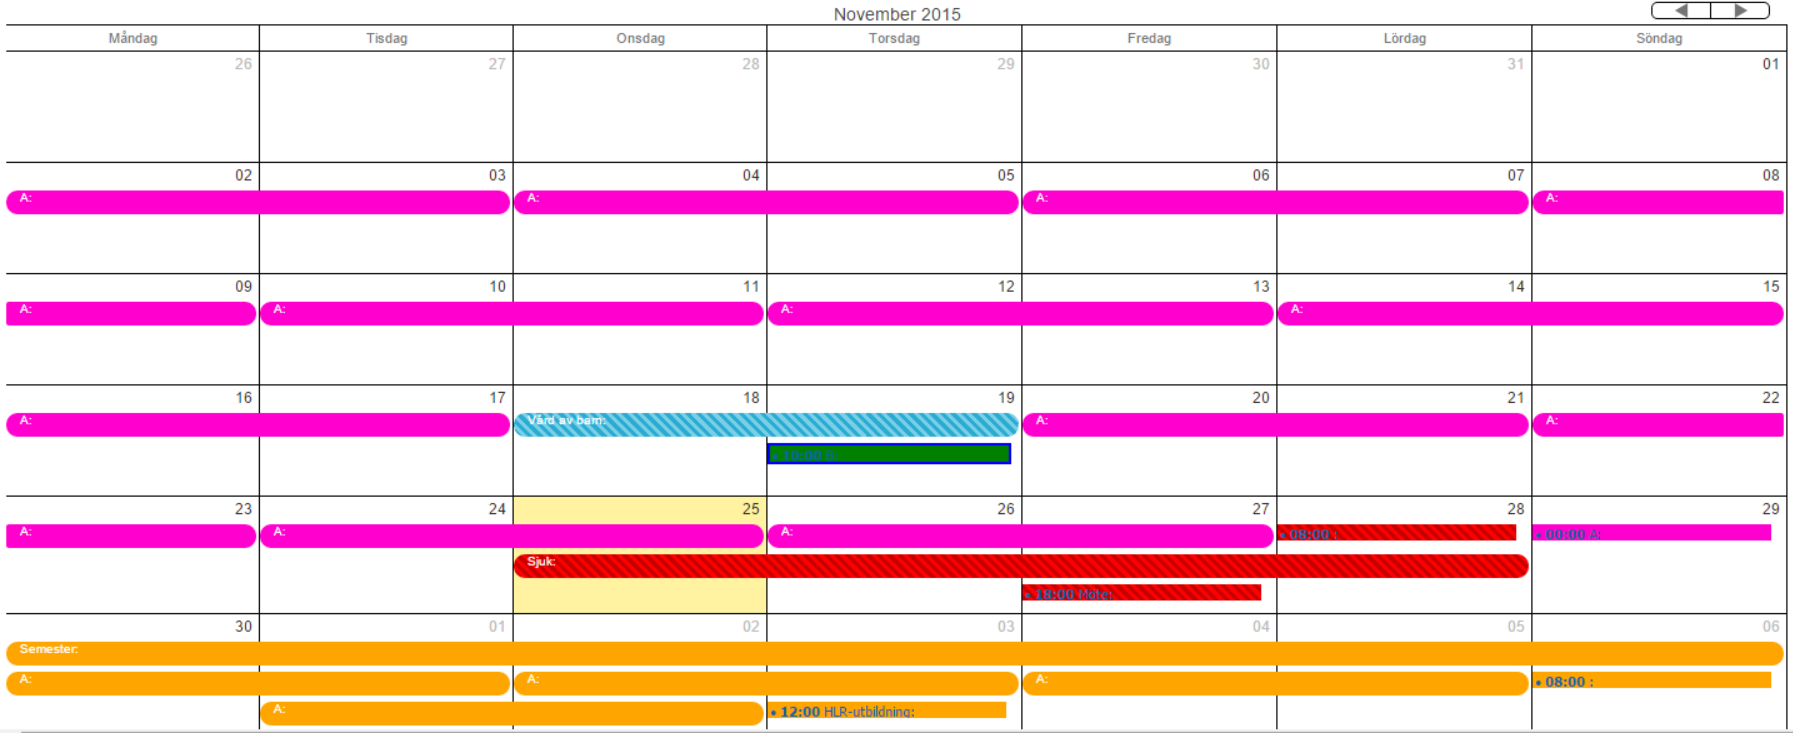 Kalender Veckovy Vid val av kalender veckovy visas arbetspassen per dag. Man kan välja hur många veckor man vill se och får då se samtliga dagar i en lista med olika dagar per kolumn.